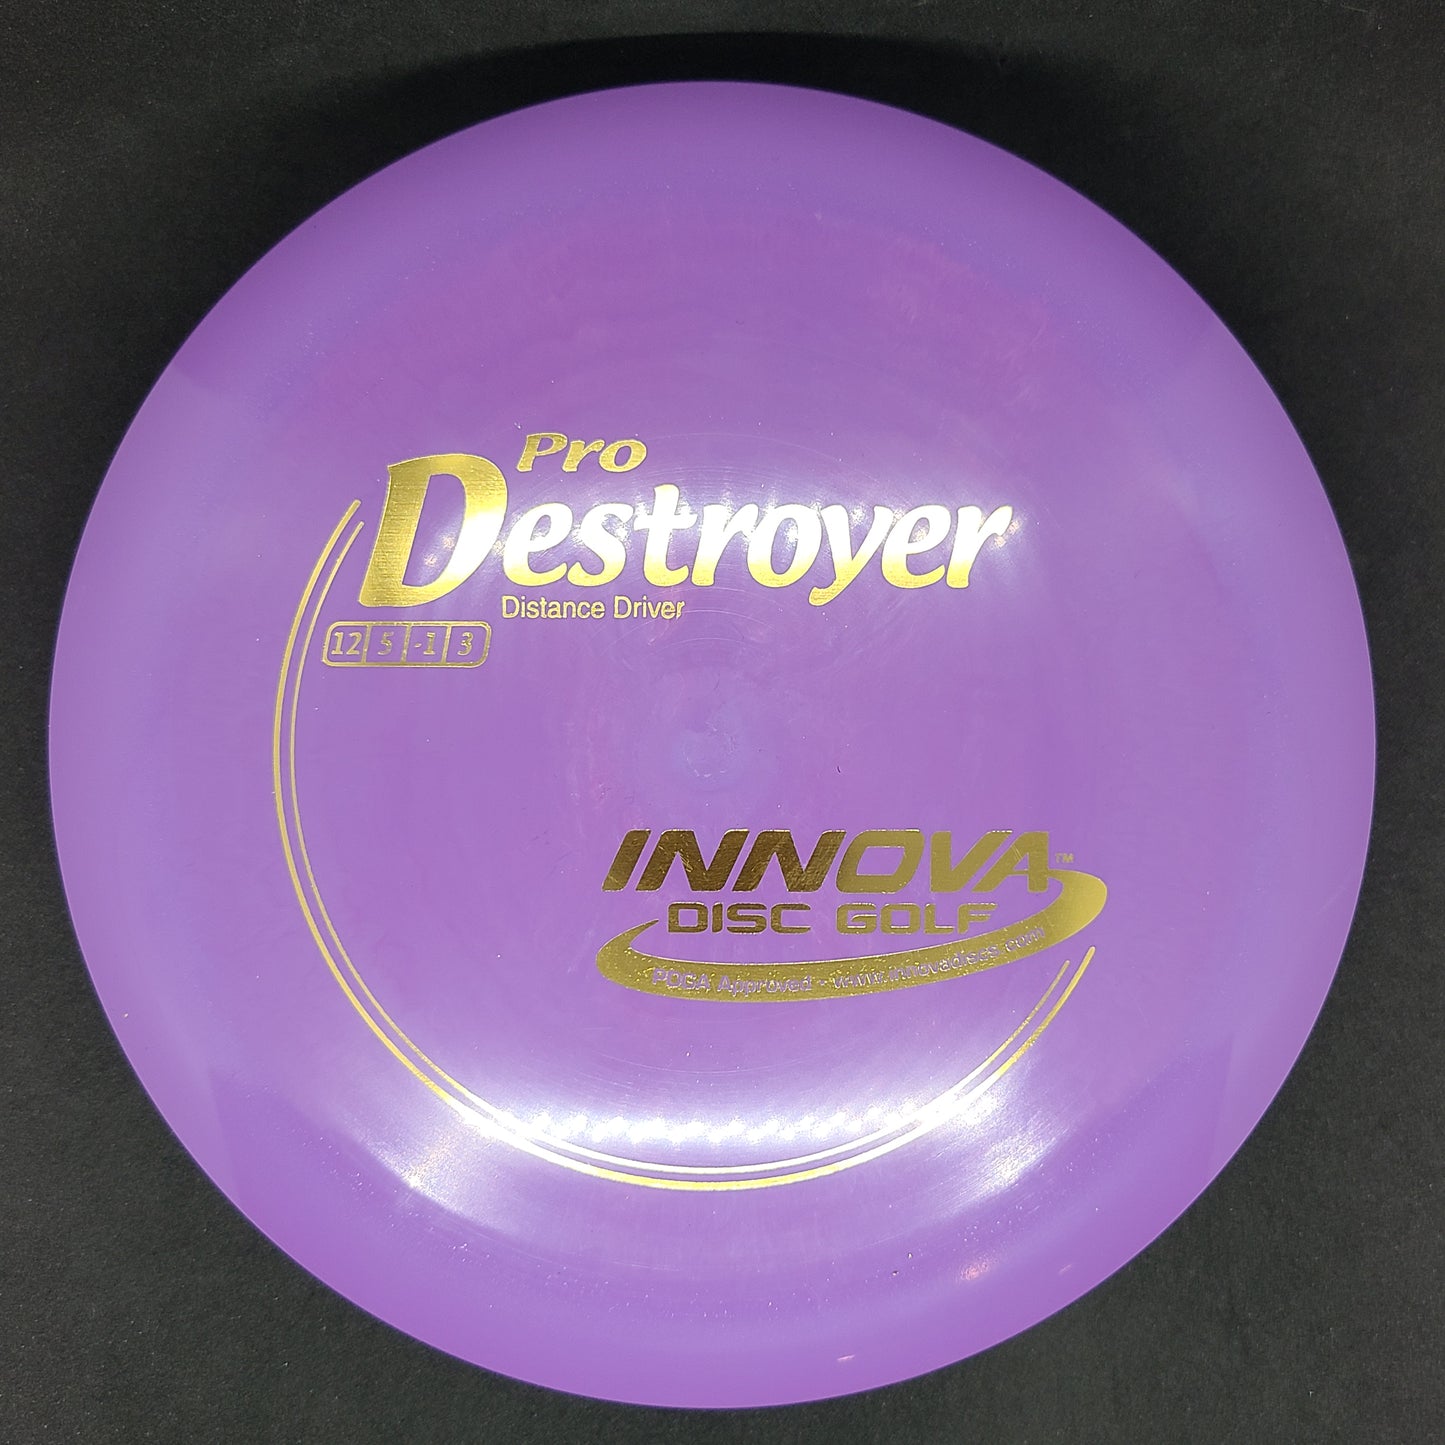 Innova - Destroyer - Pro